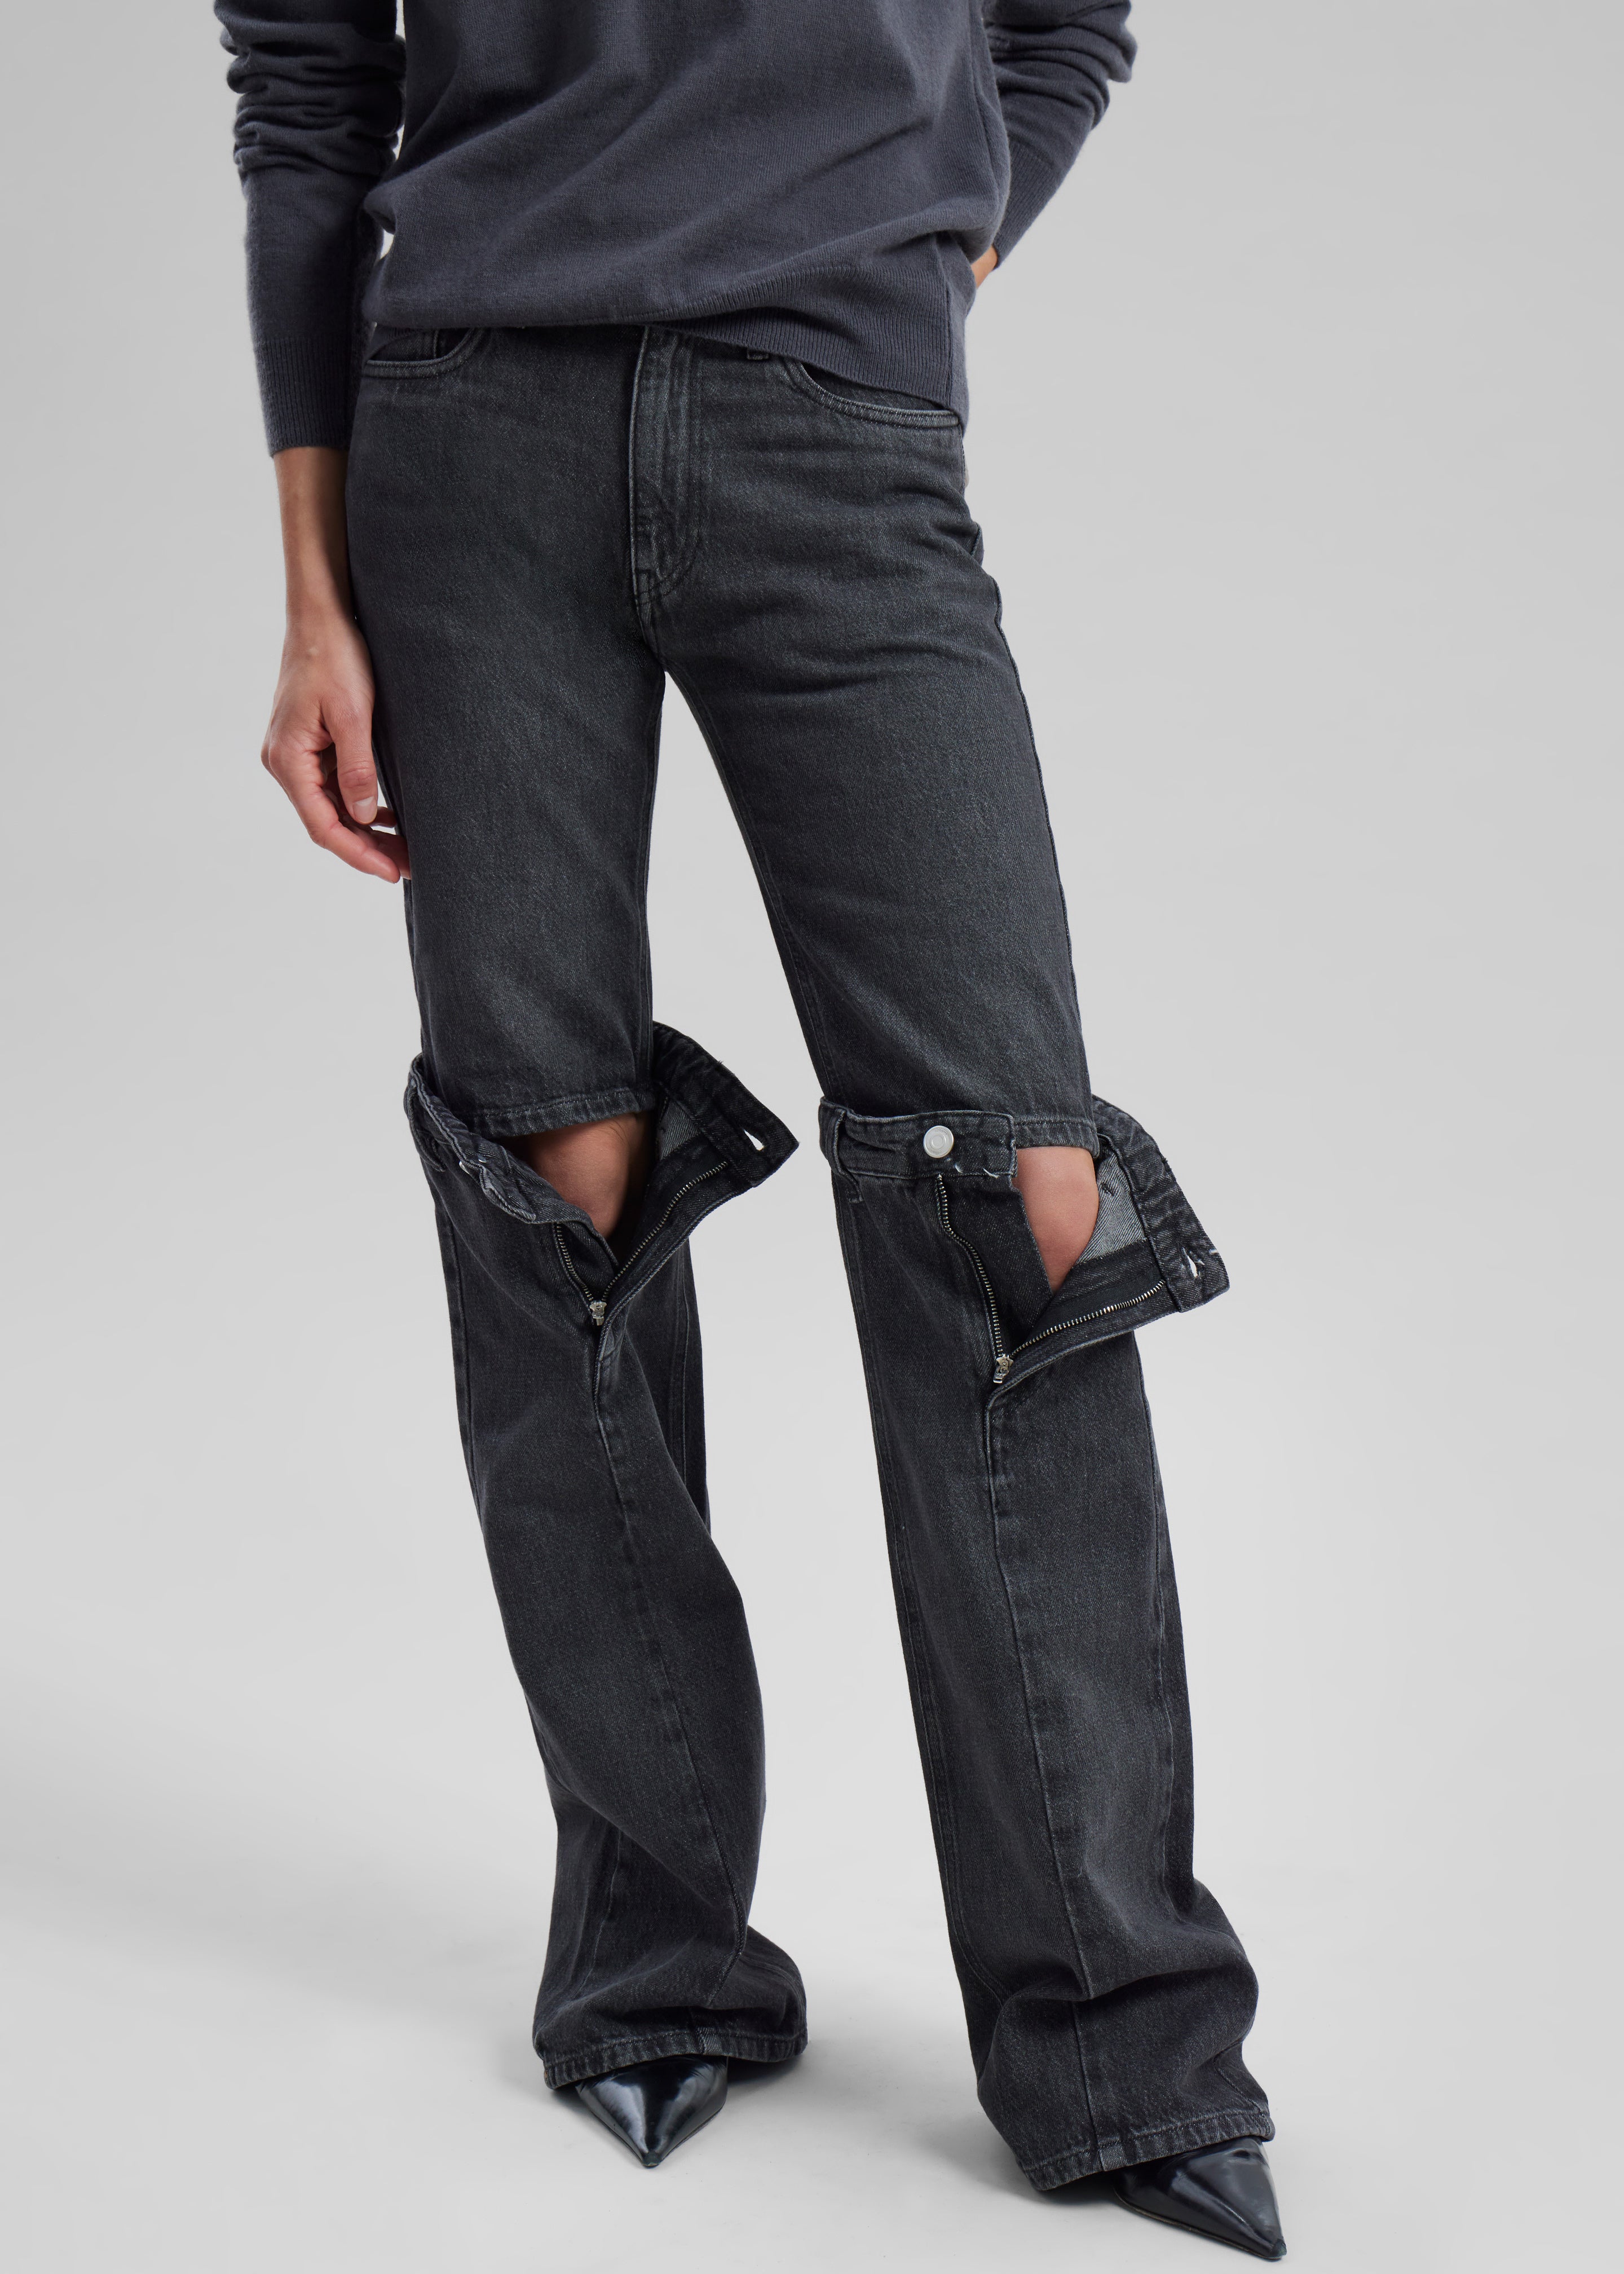 Coperni Open Knee Jeans - Washed Black - 3